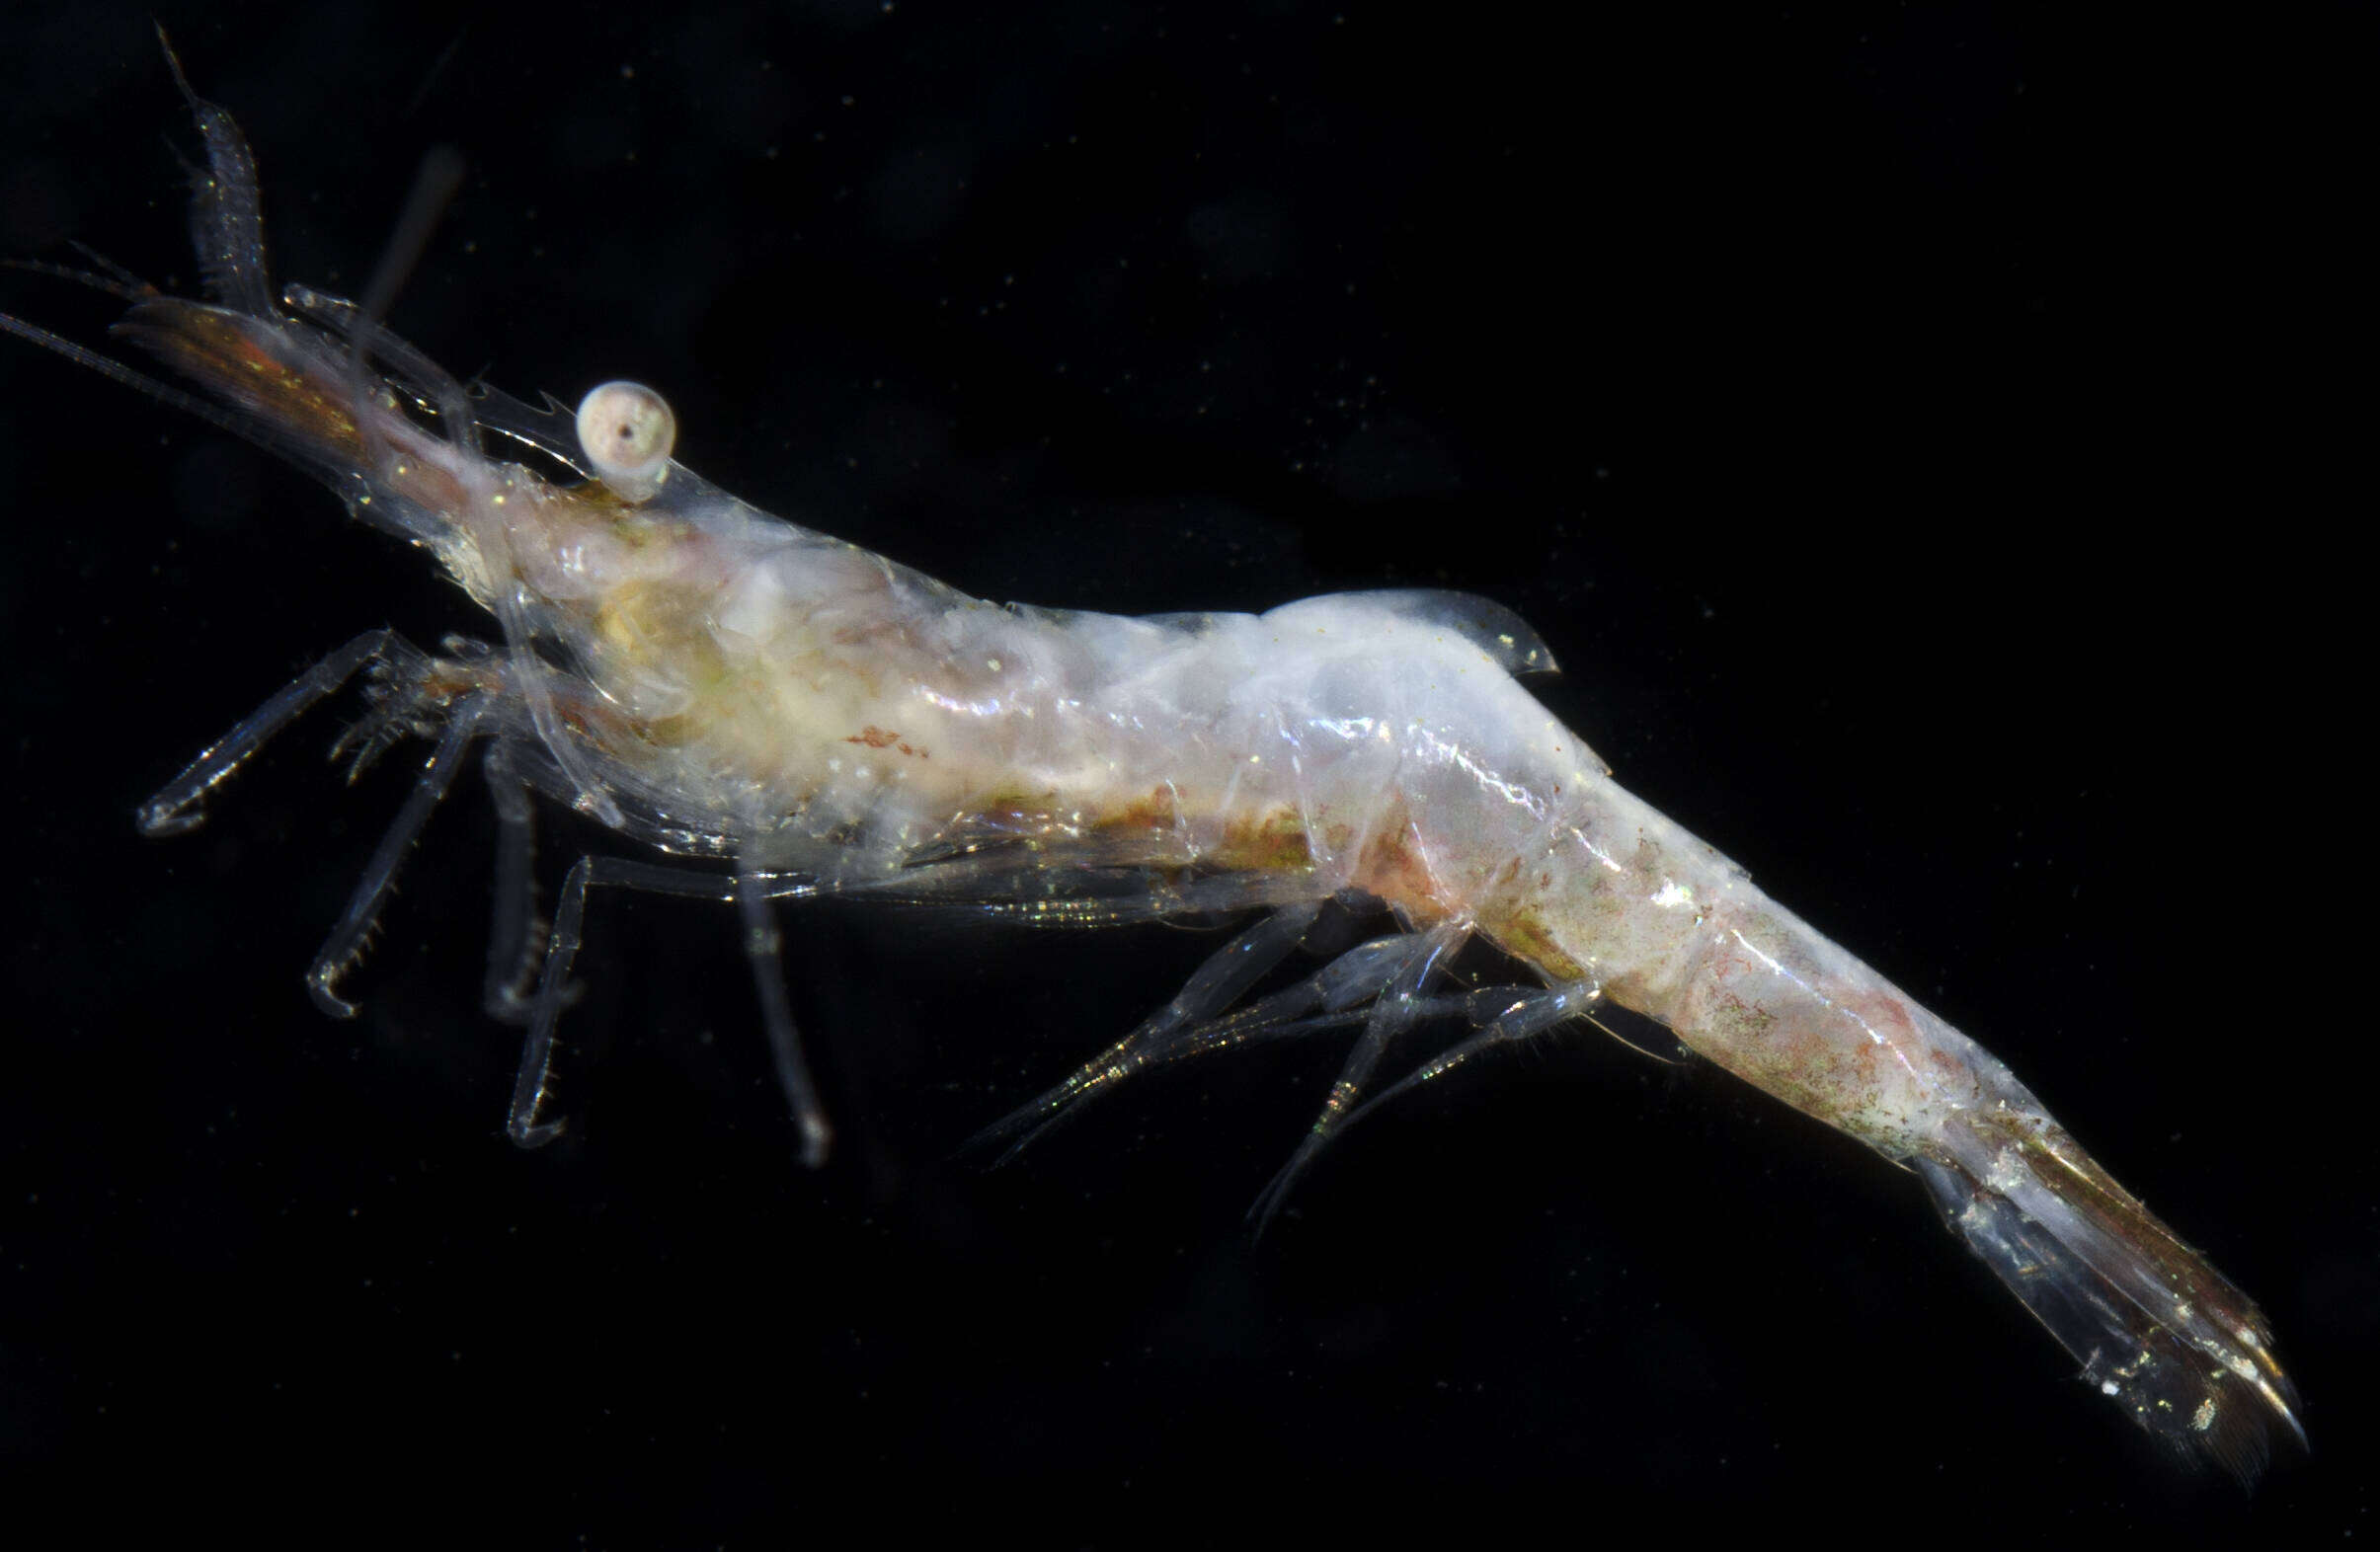 Image of false zostera shrimp